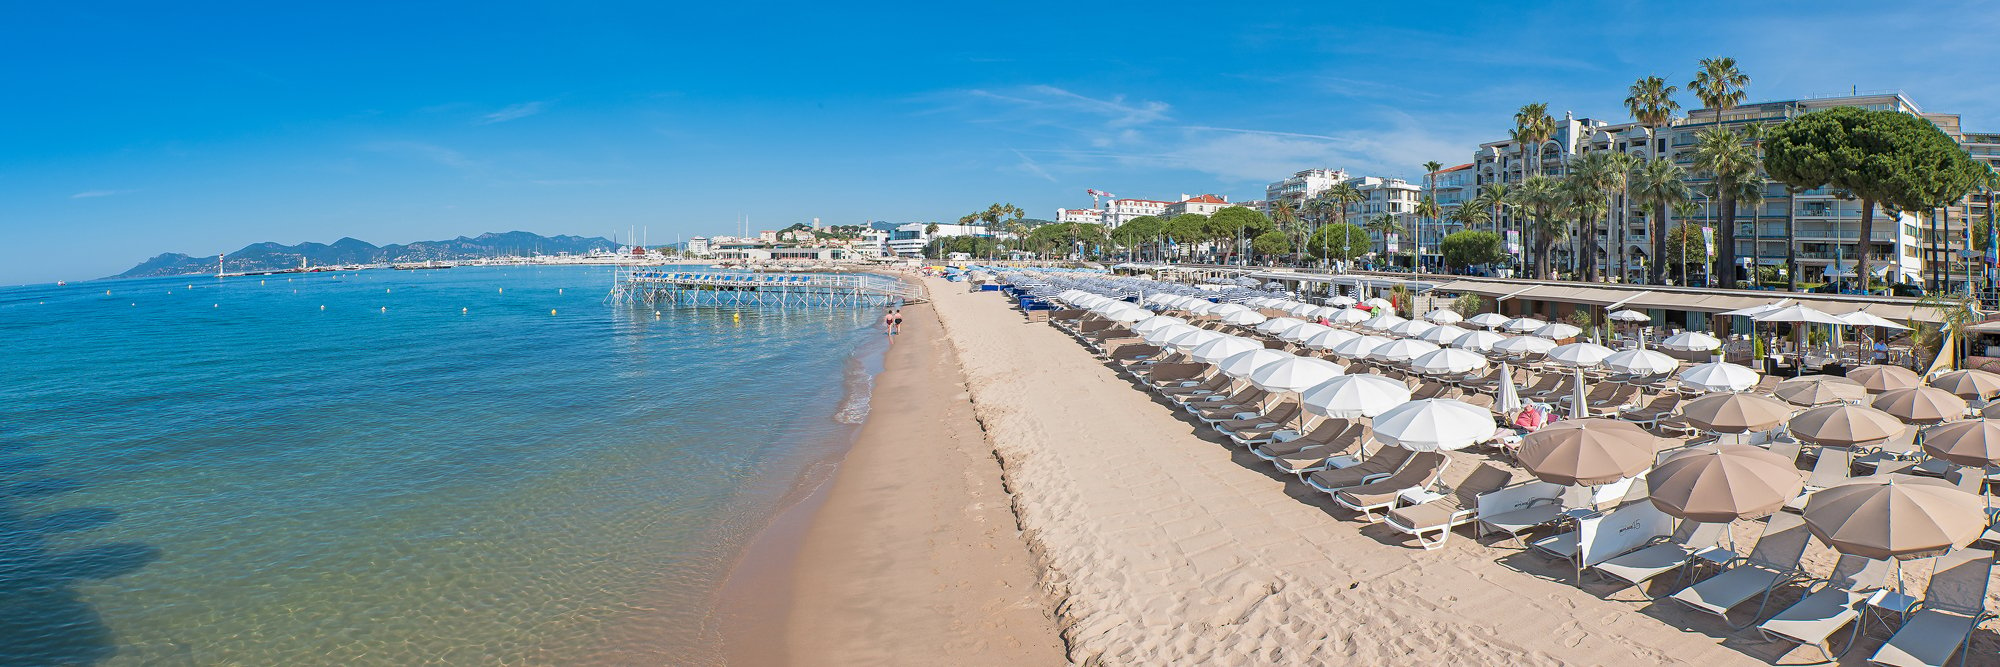 Et Cannes recréa sa plage